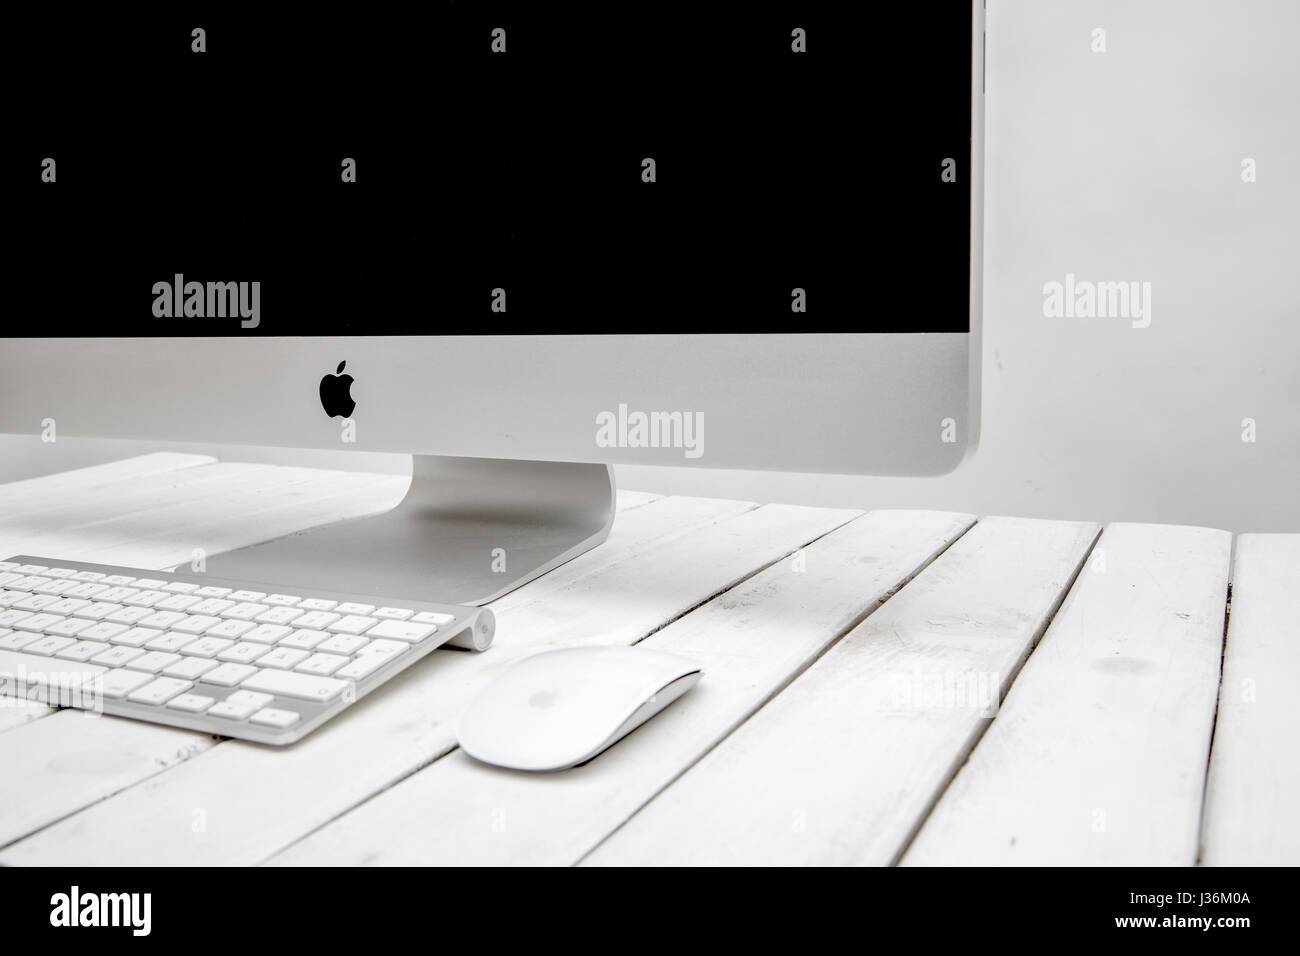 Dettaglio del computer iMac. È Macintosh desktop progettato e costruito da Apple Inc Foto Stock